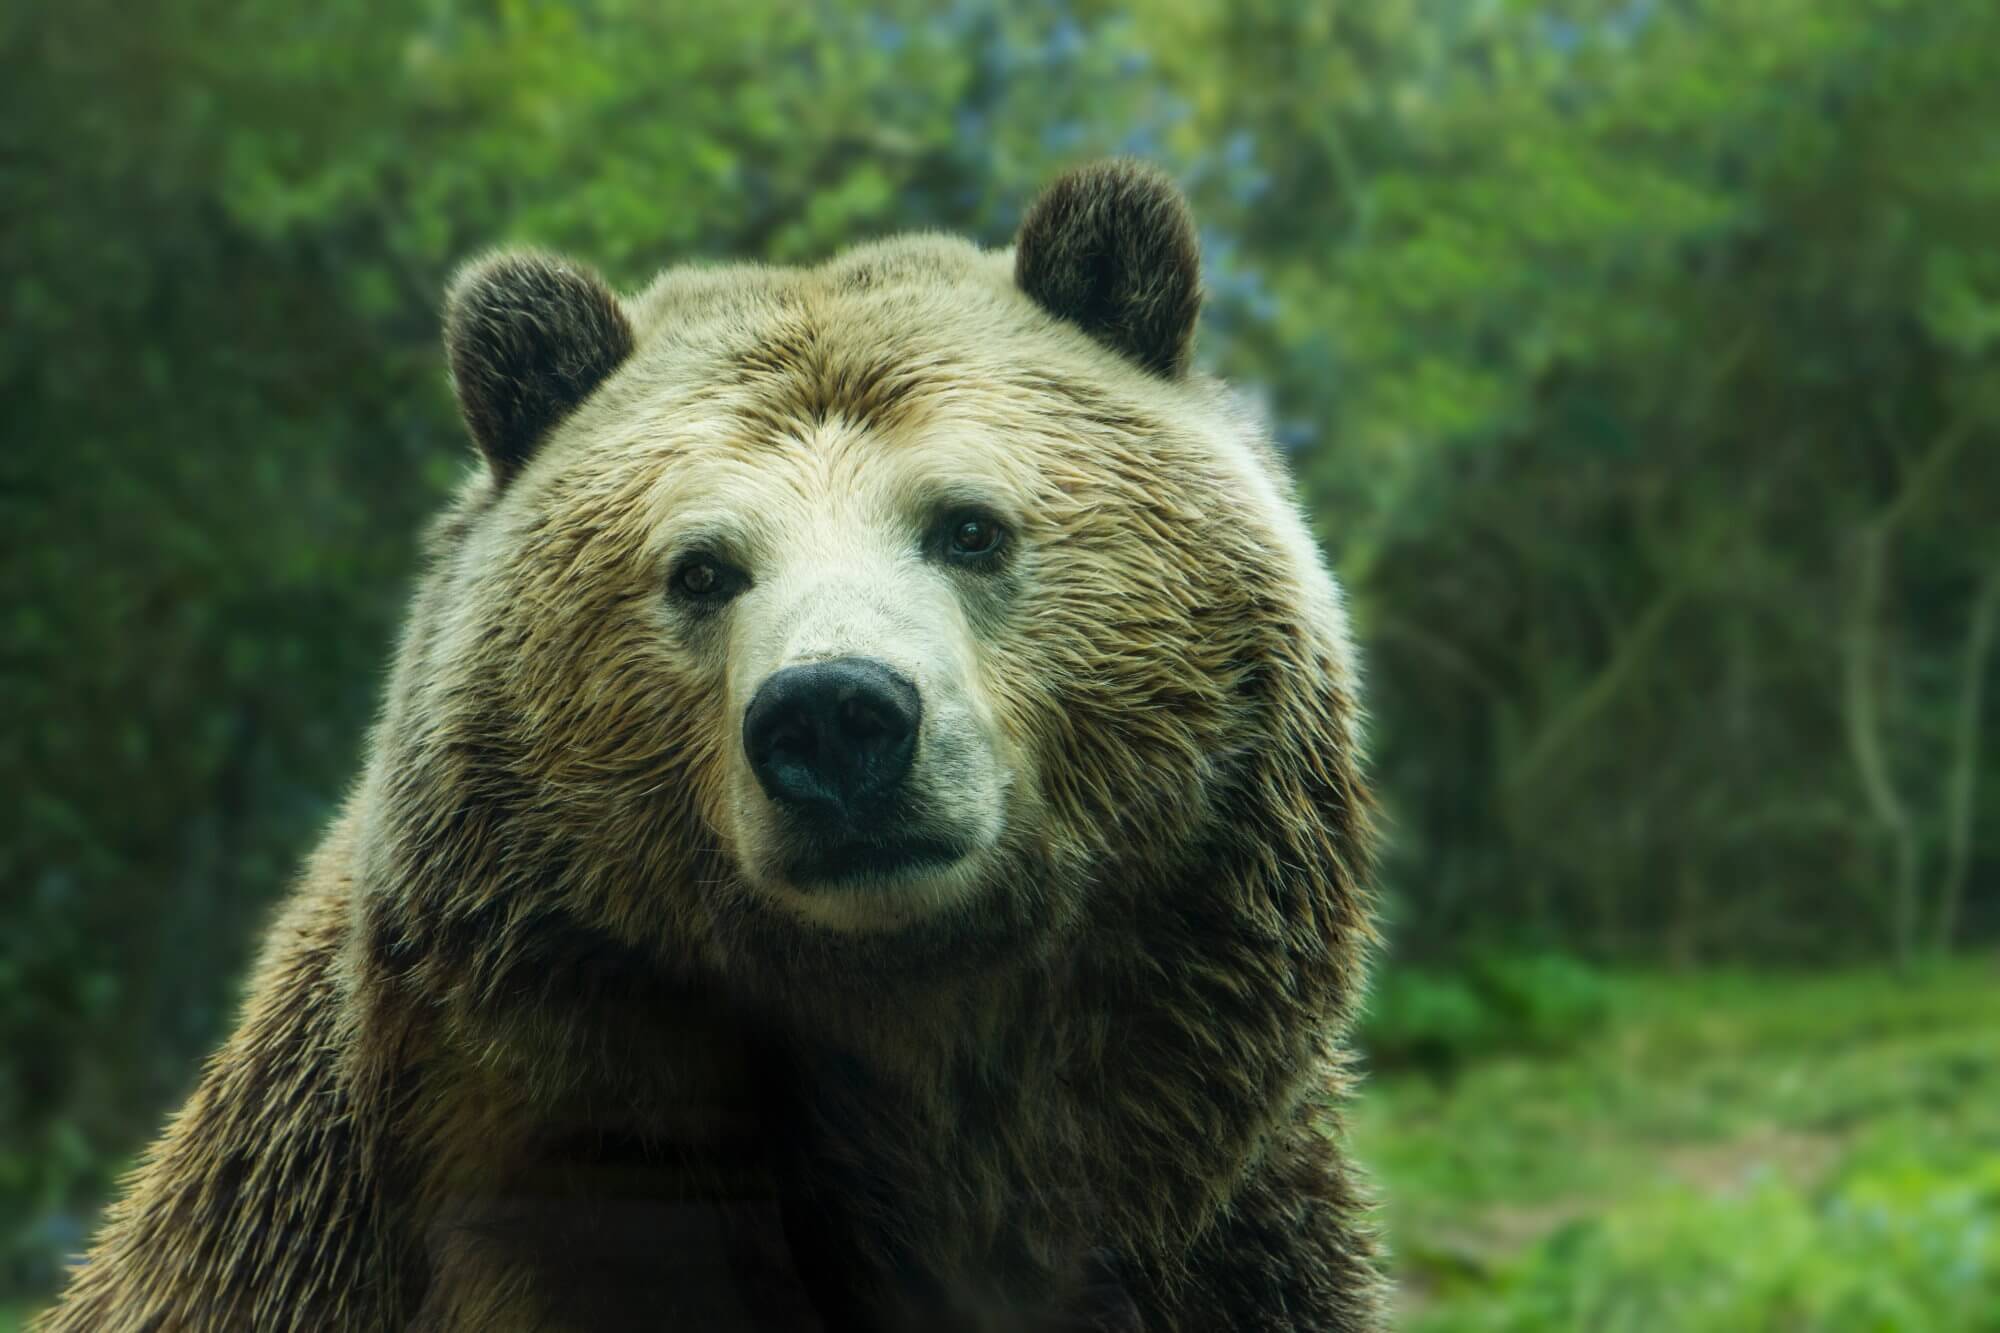 Niedźwiedzie zaczęli częściej atakować ludzi. Z czym to jest związane?